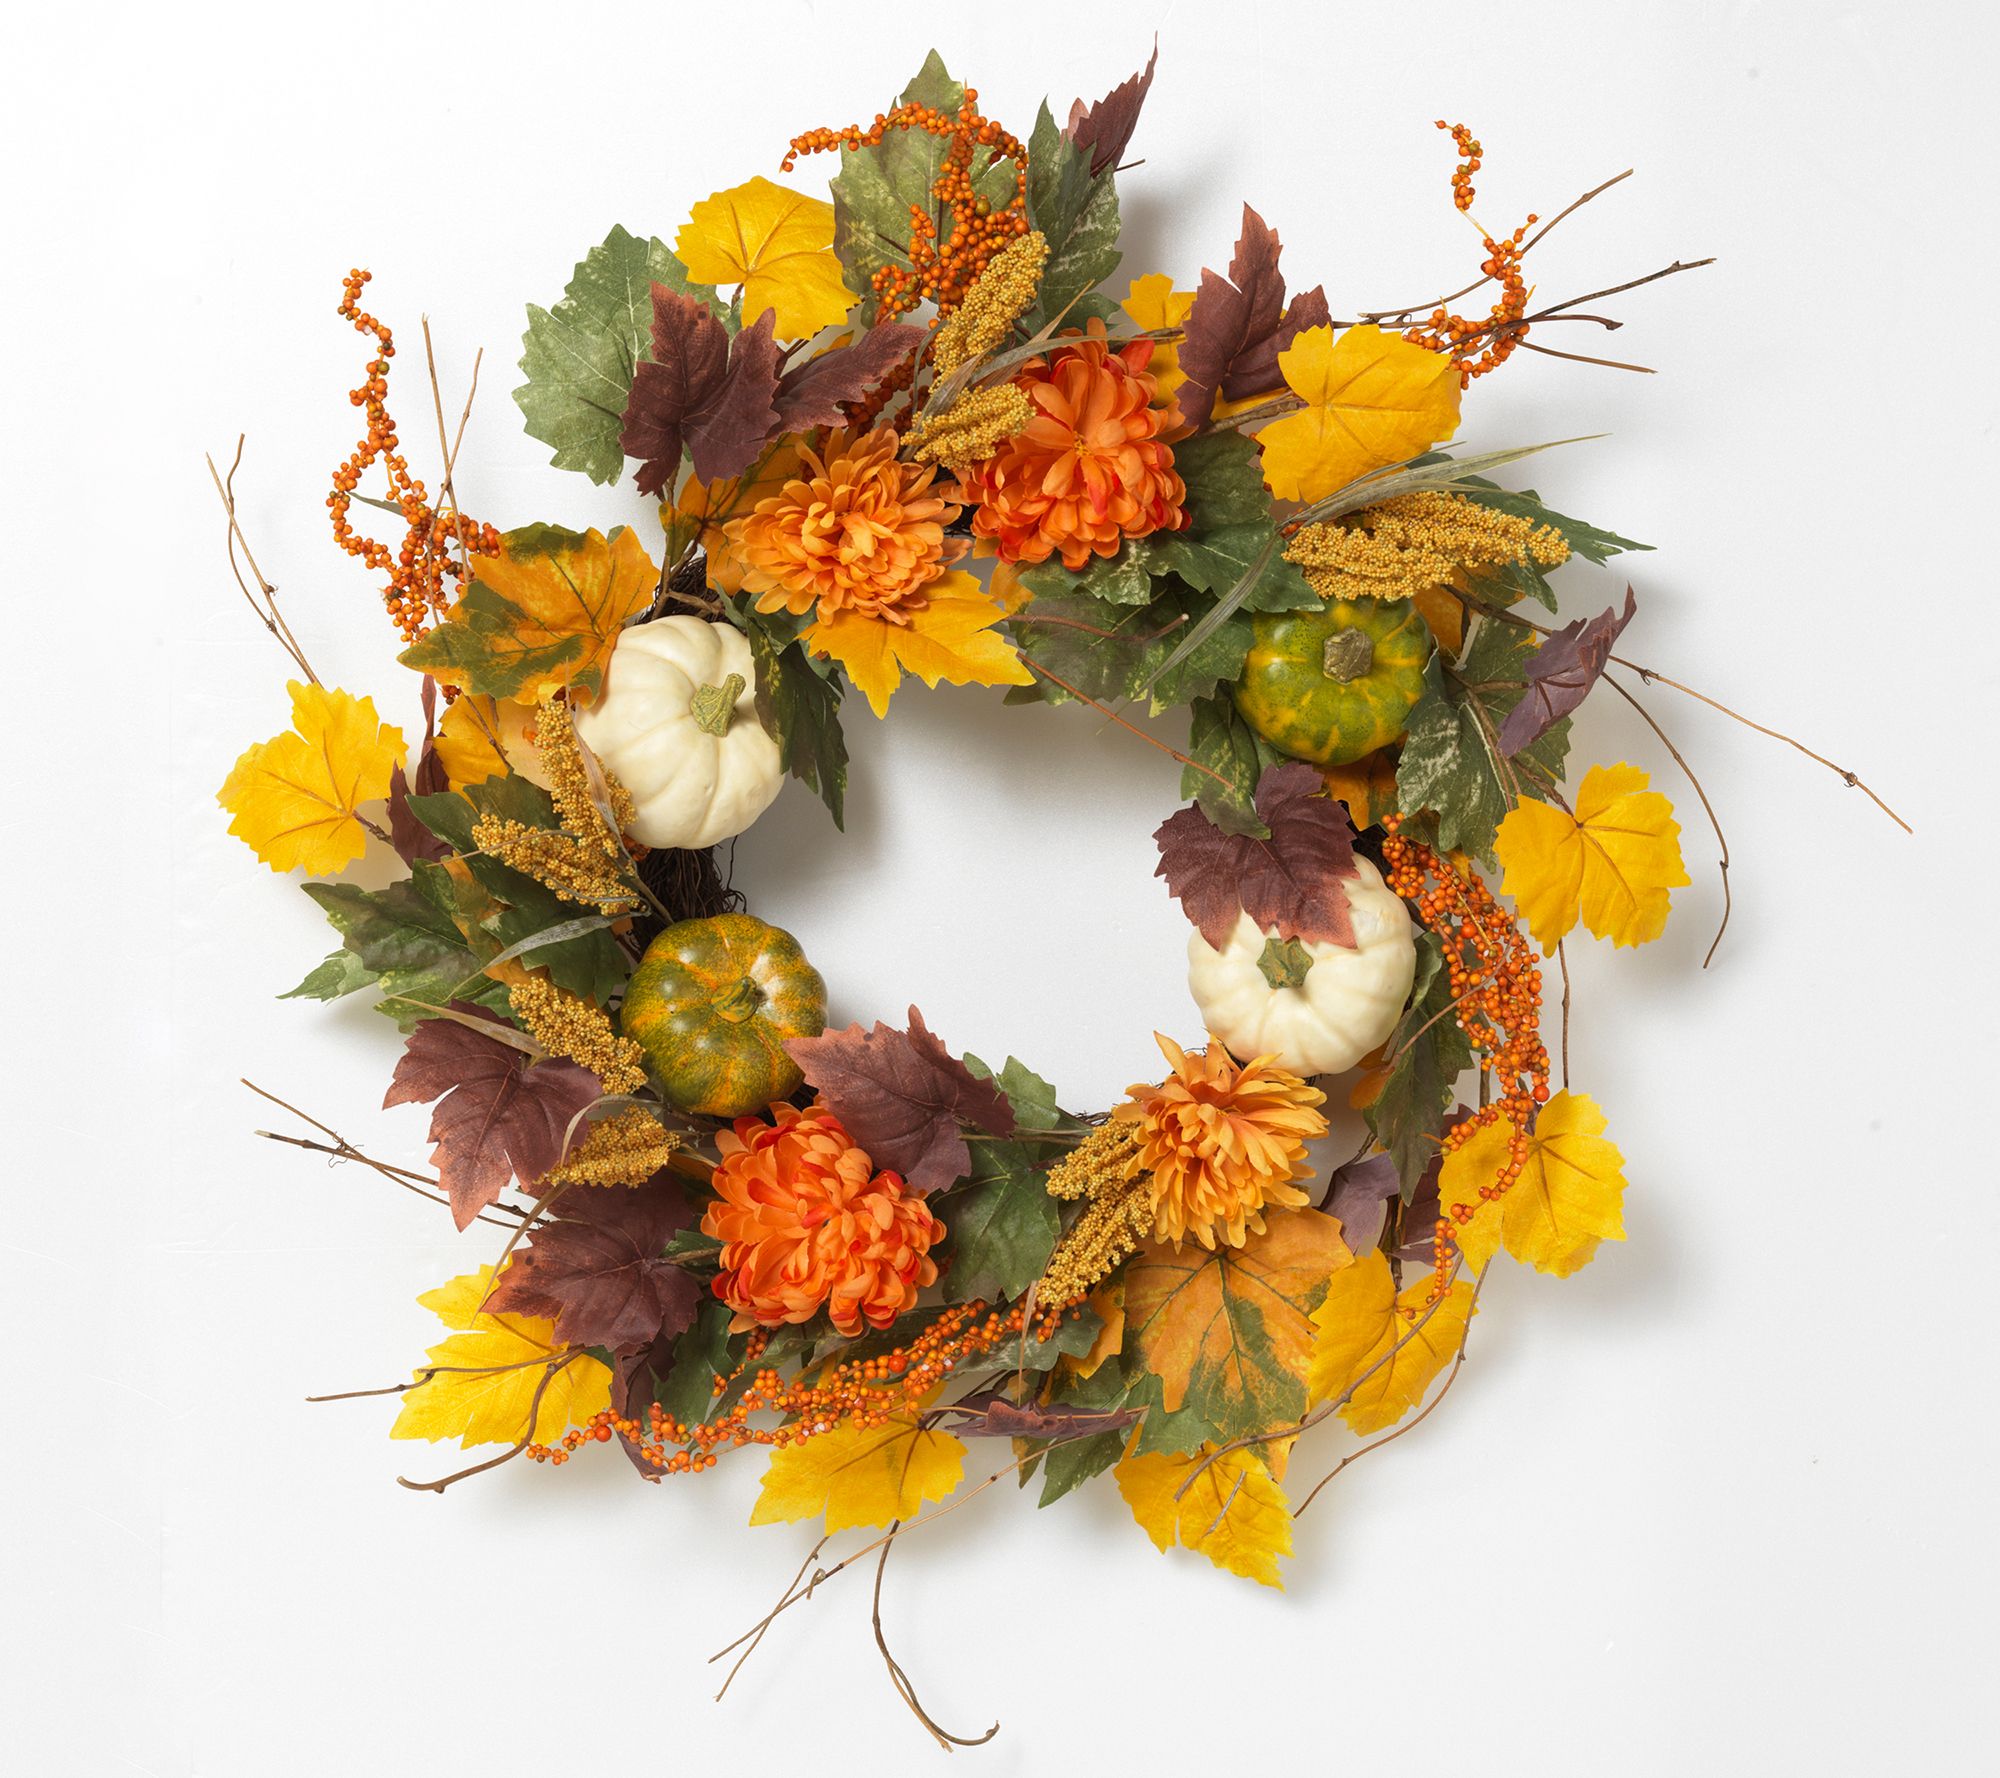 Make your door pop with a harvest wreath